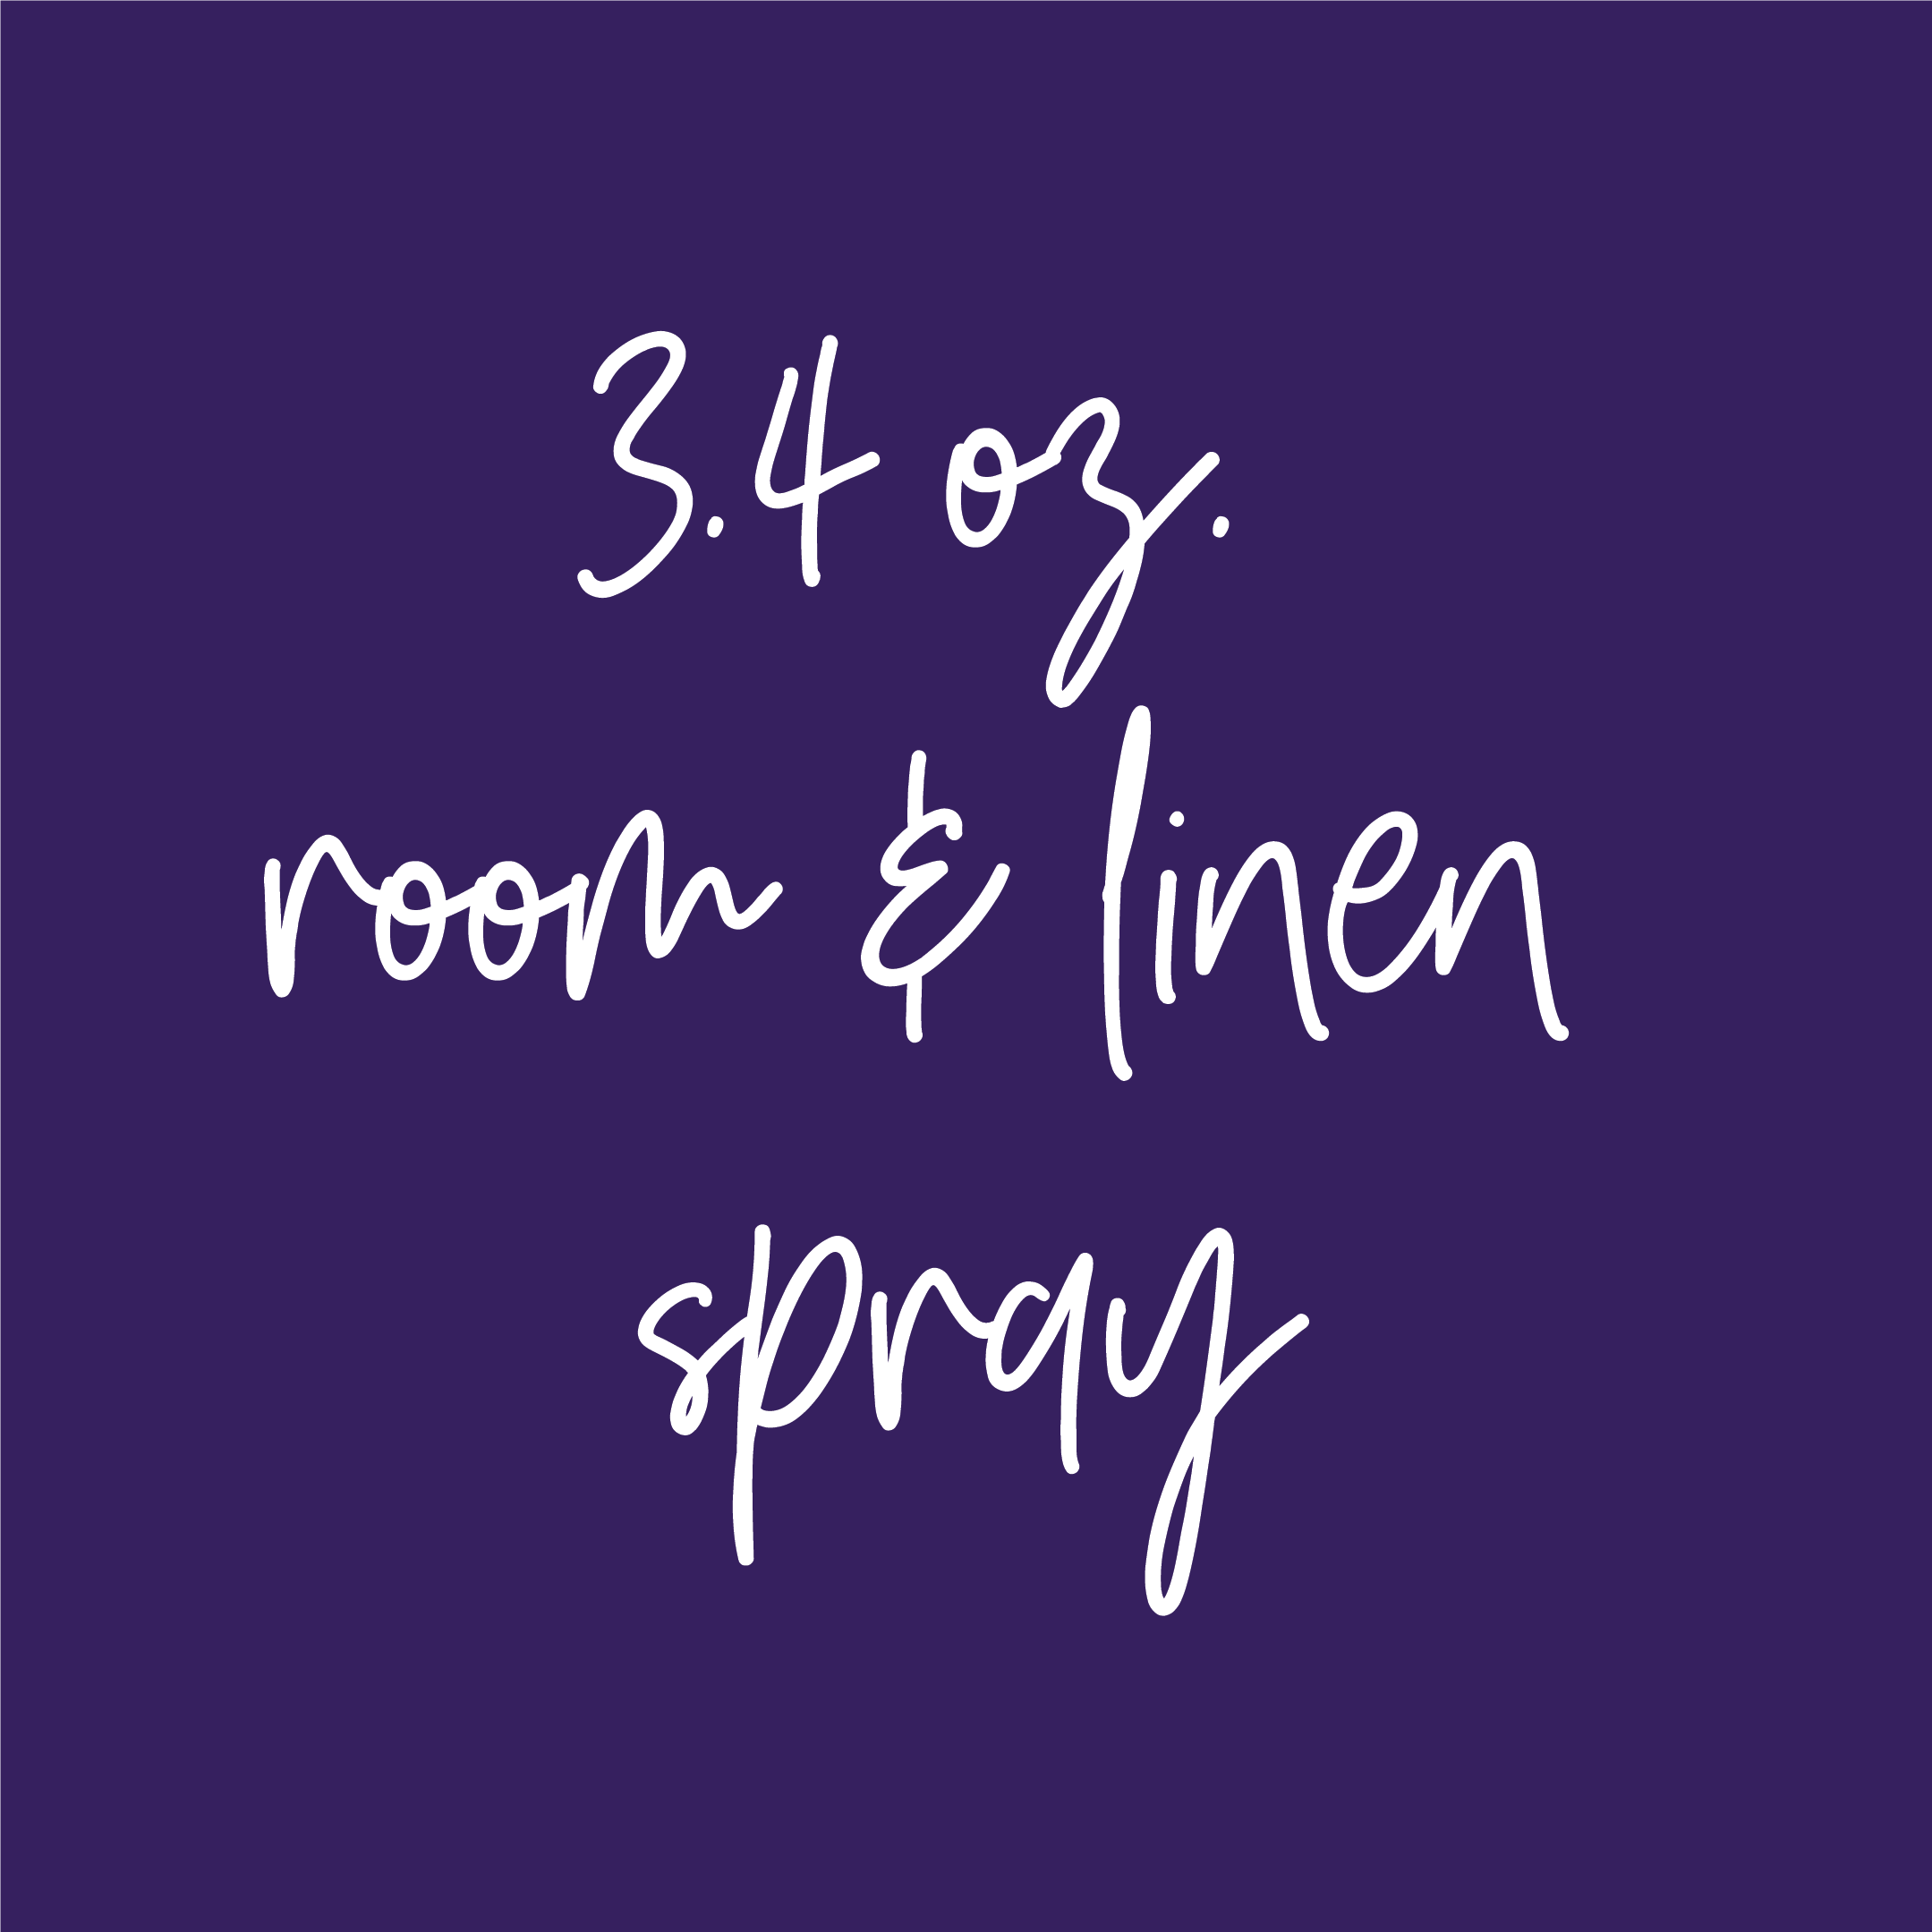 3.4 oz. Room & Linen Spray Reorder